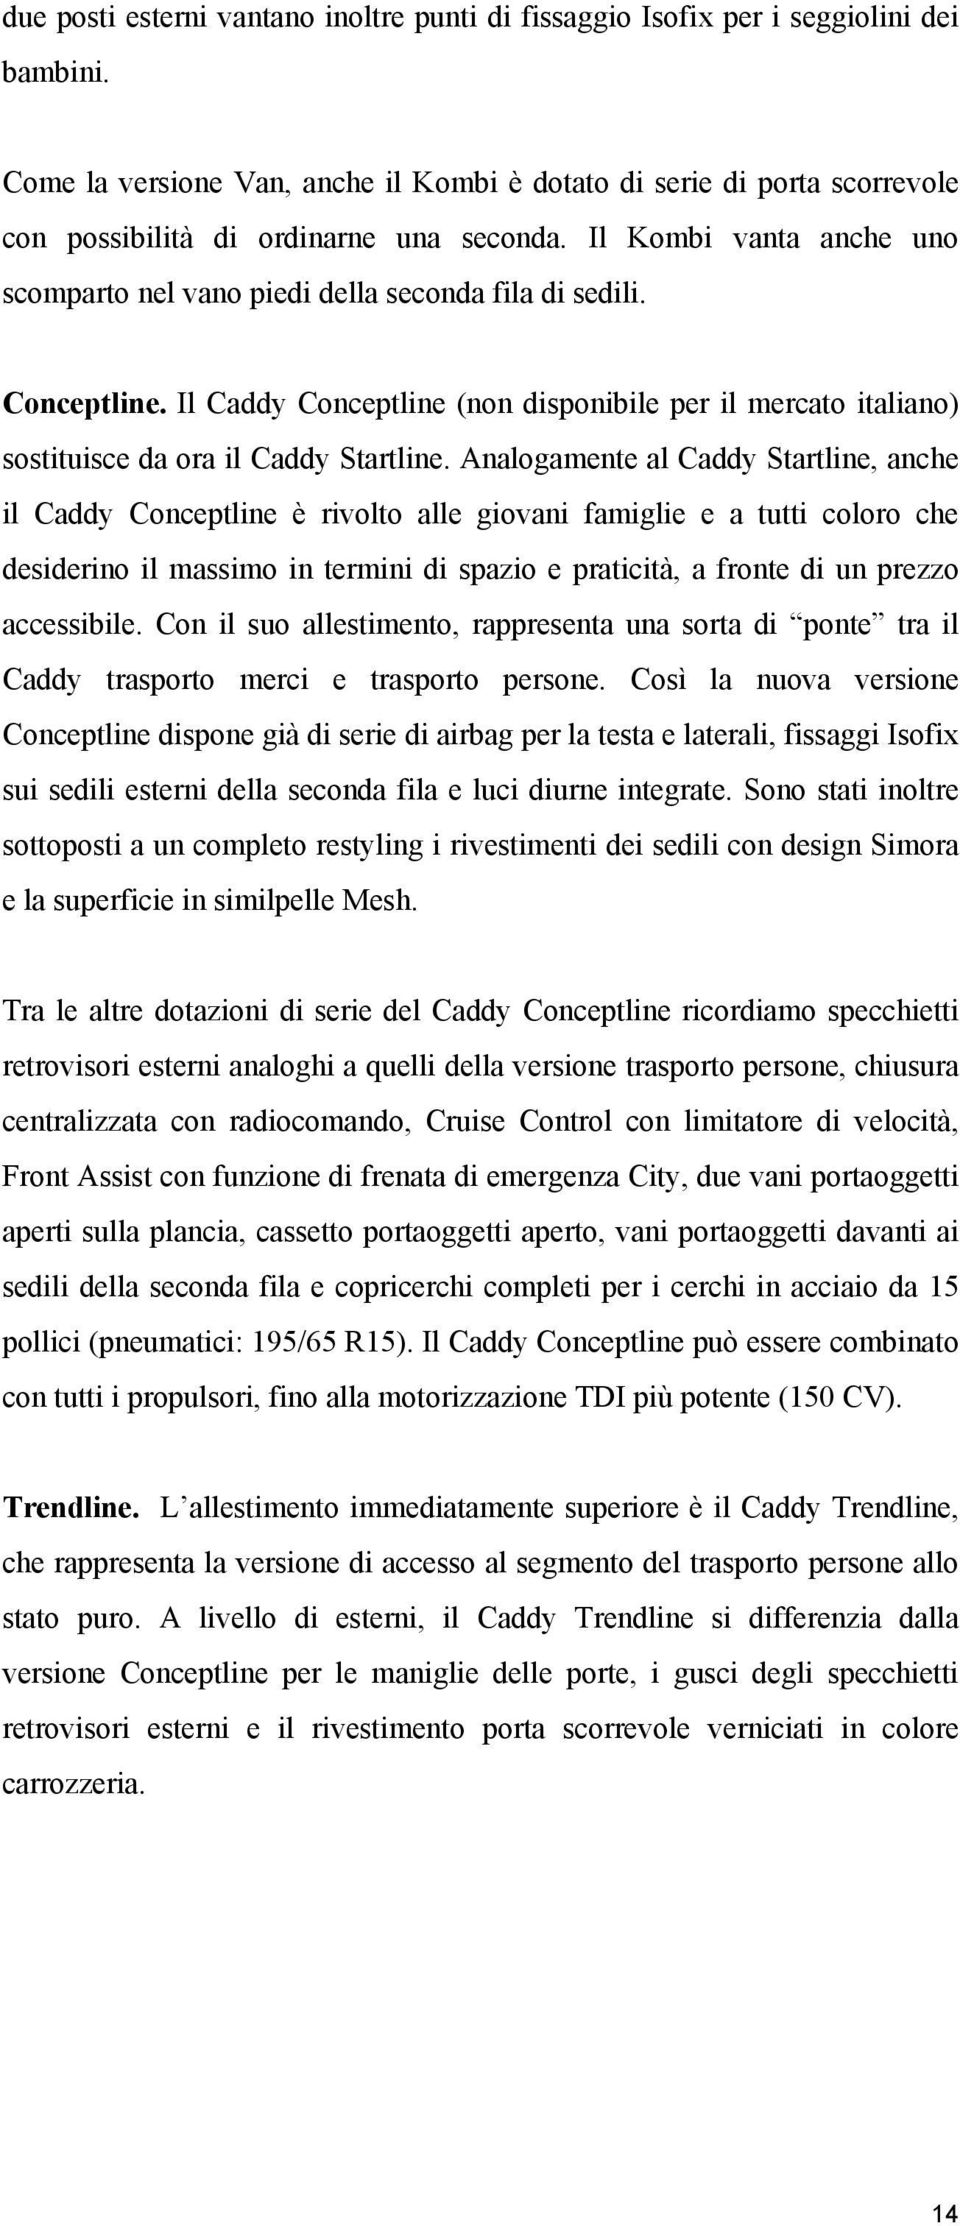 Conceptline. Il Caddy Conceptline (non disponibile per il mercato italiano) sostituisce da ora il Caddy Startline.